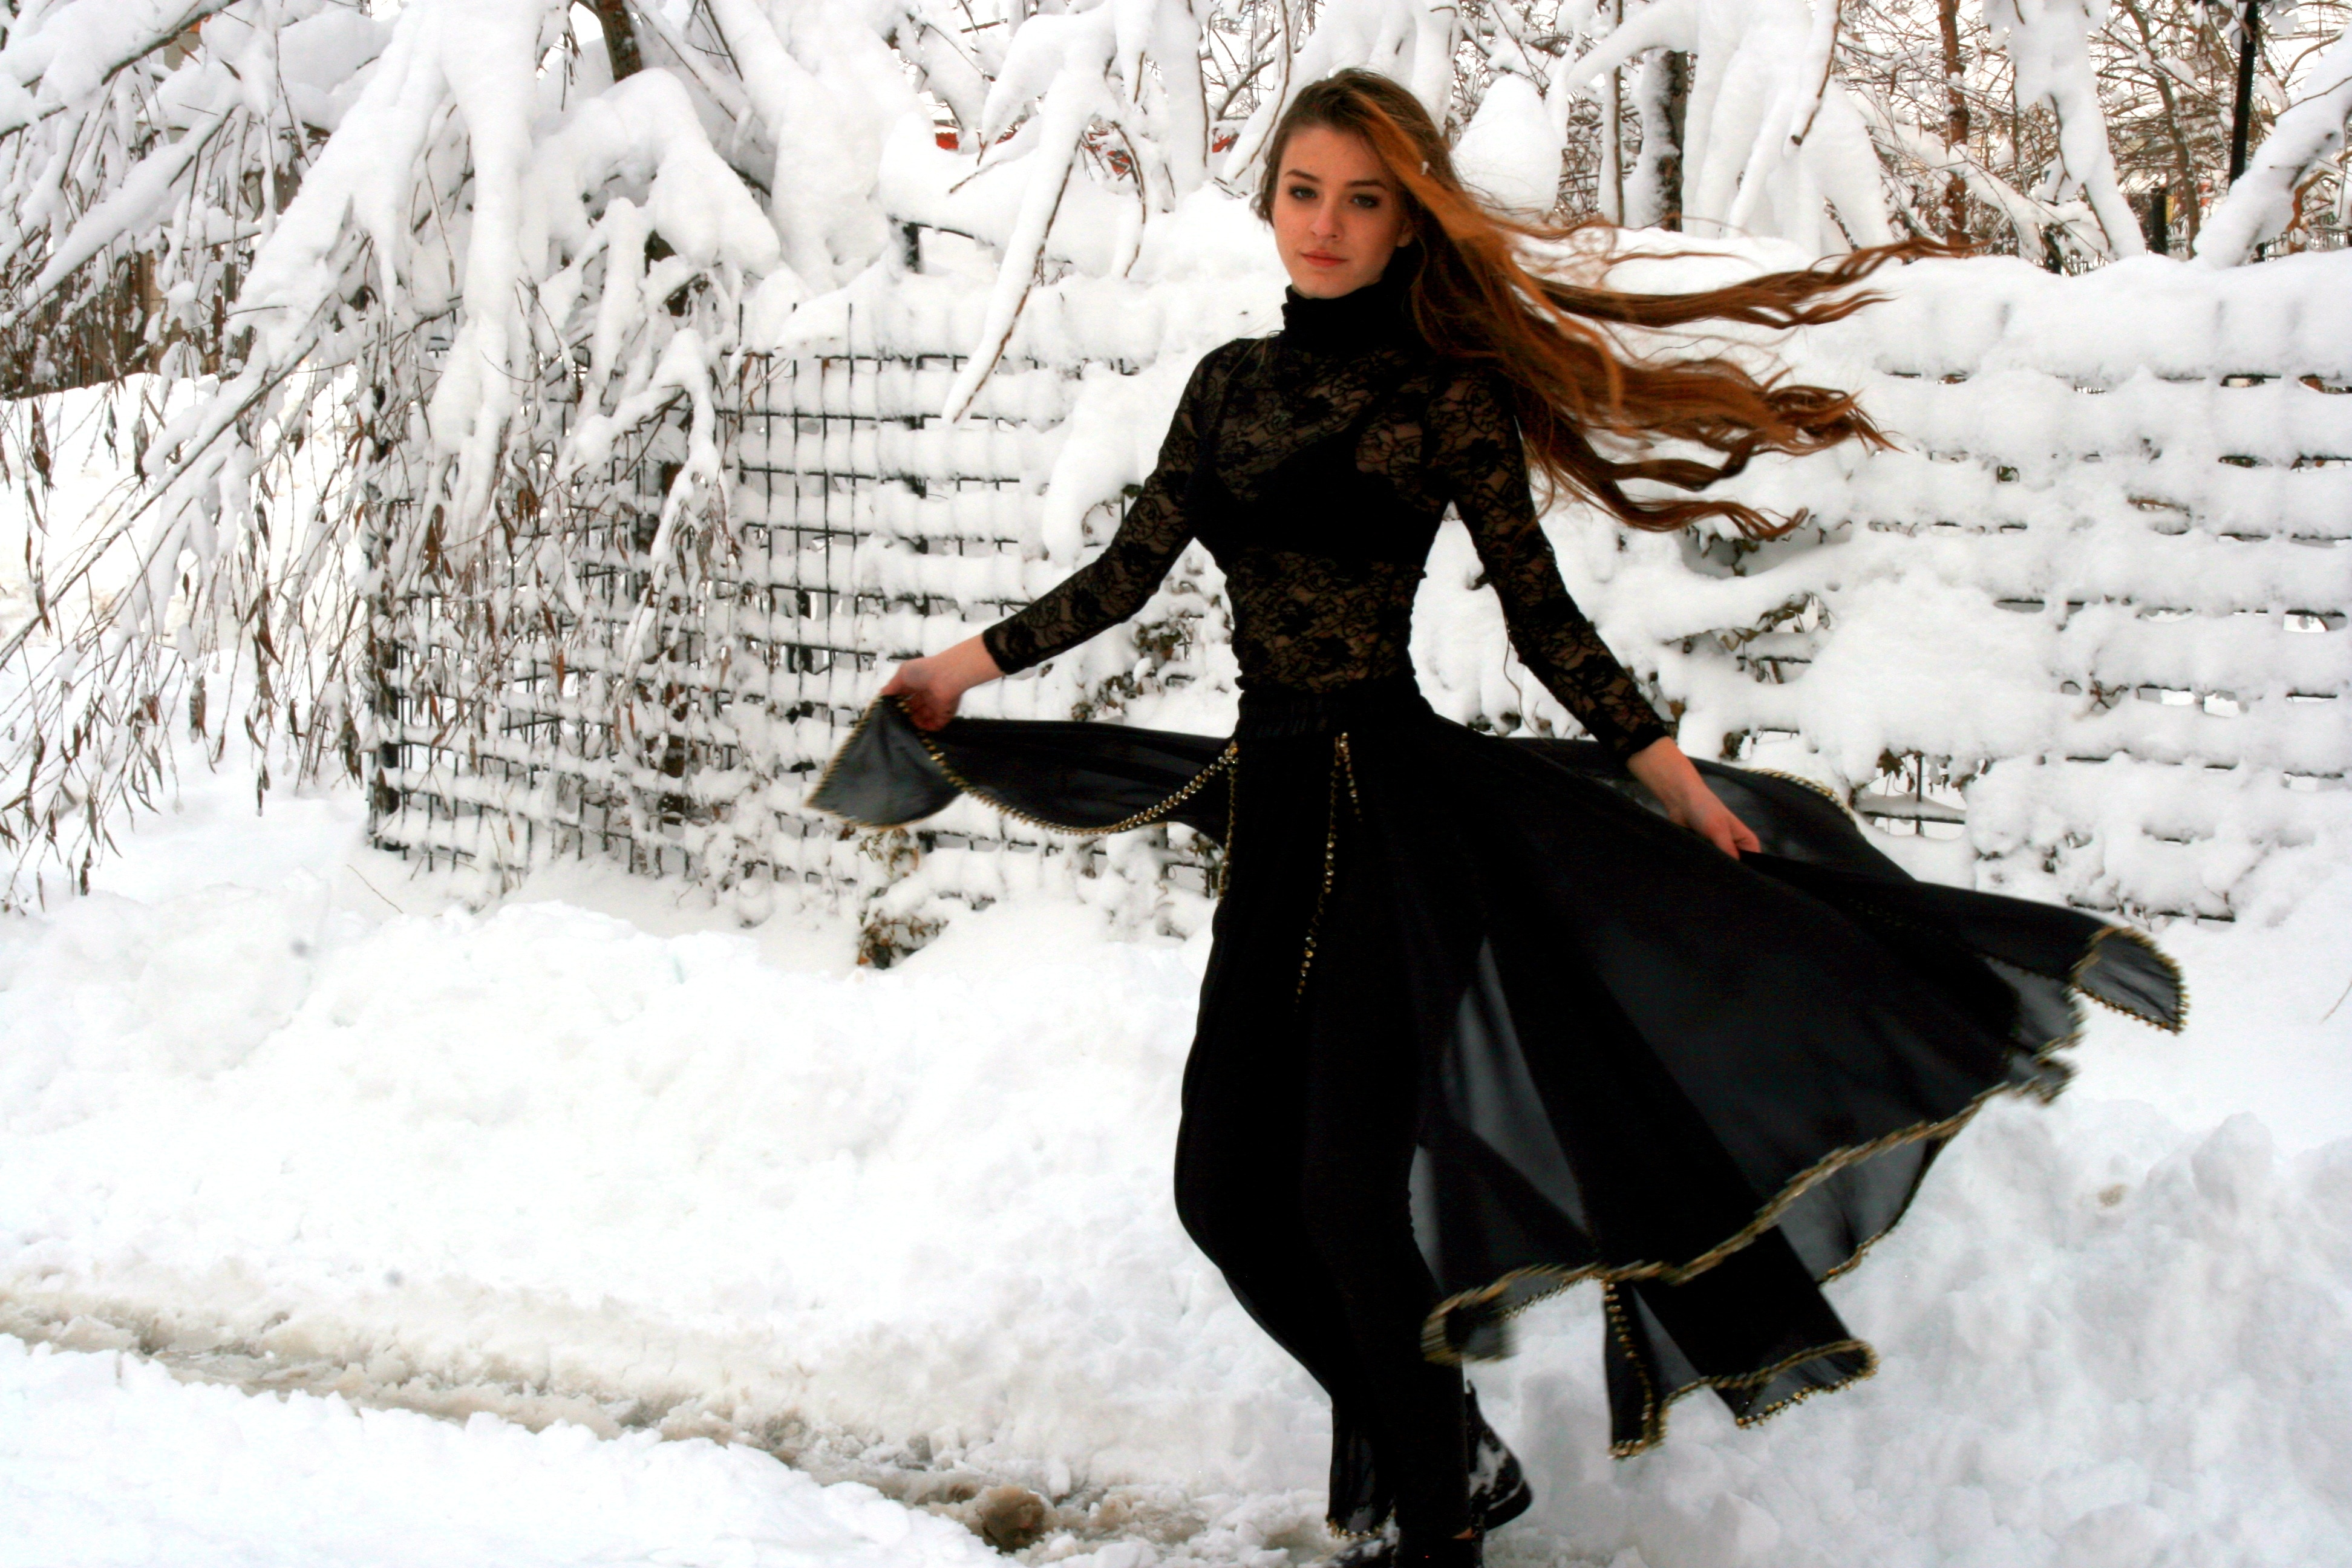 Девушка в платье в снегу